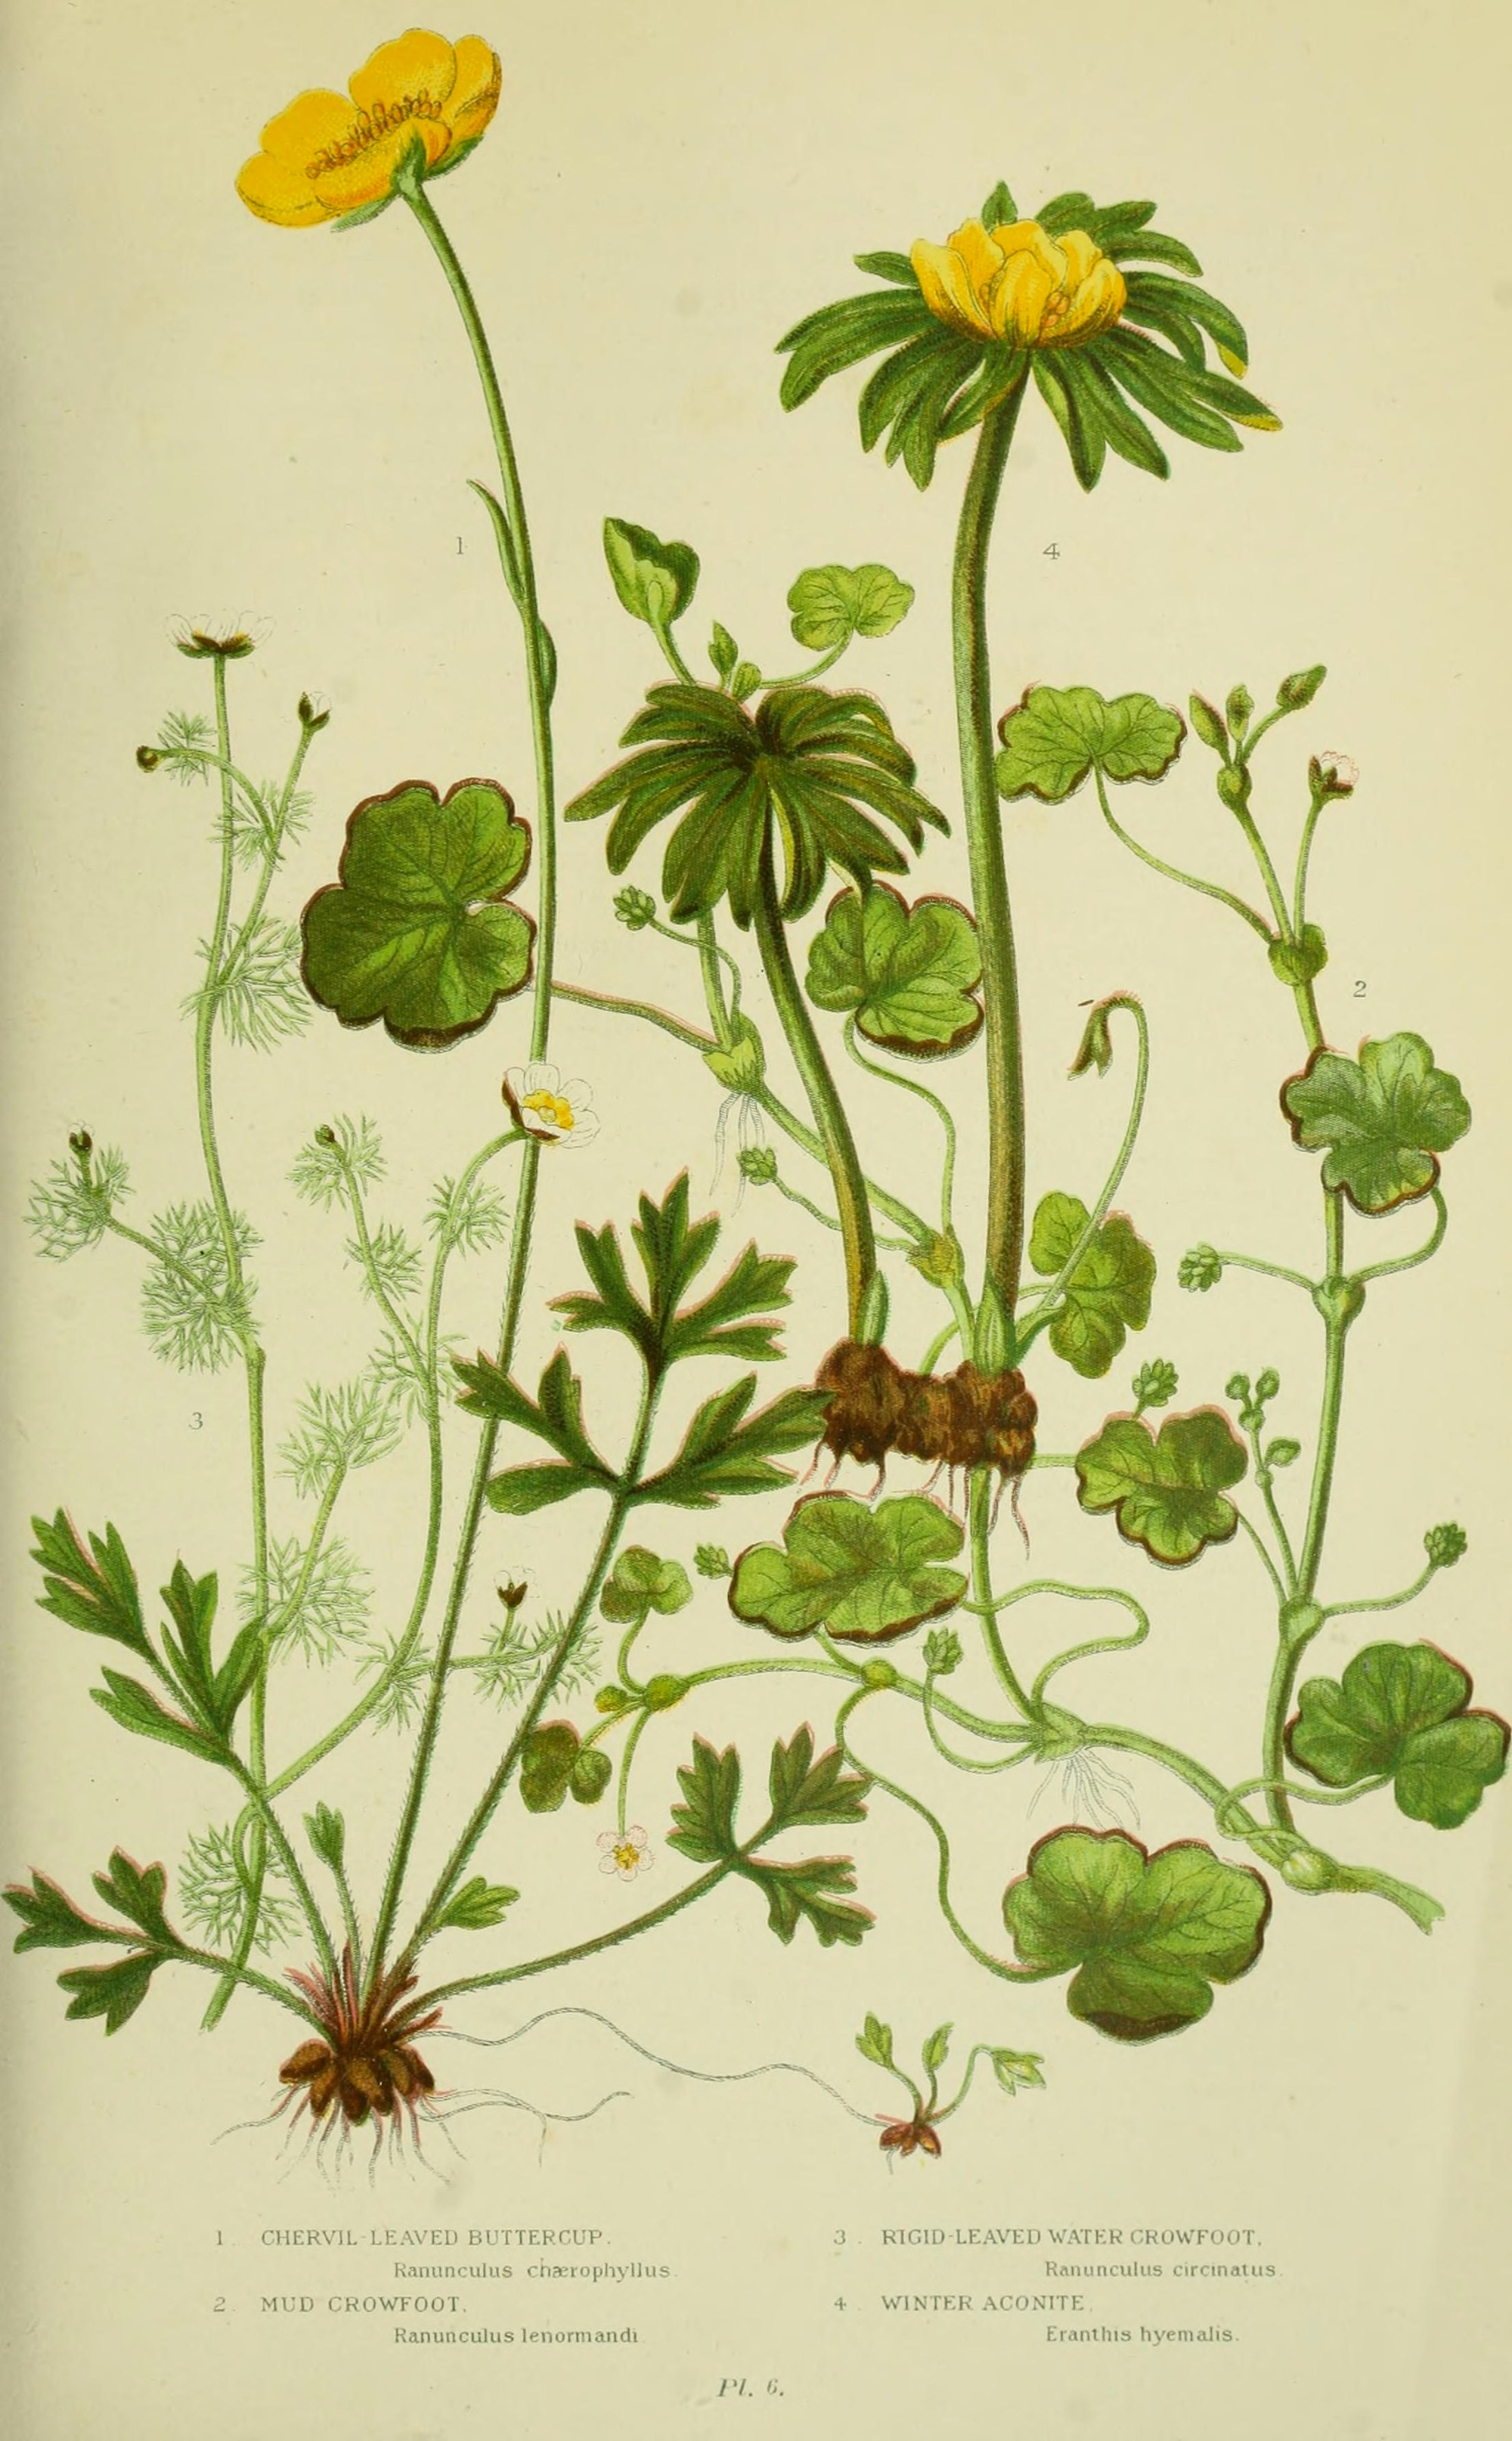 Winter Aconite 1905 botanical illustration.